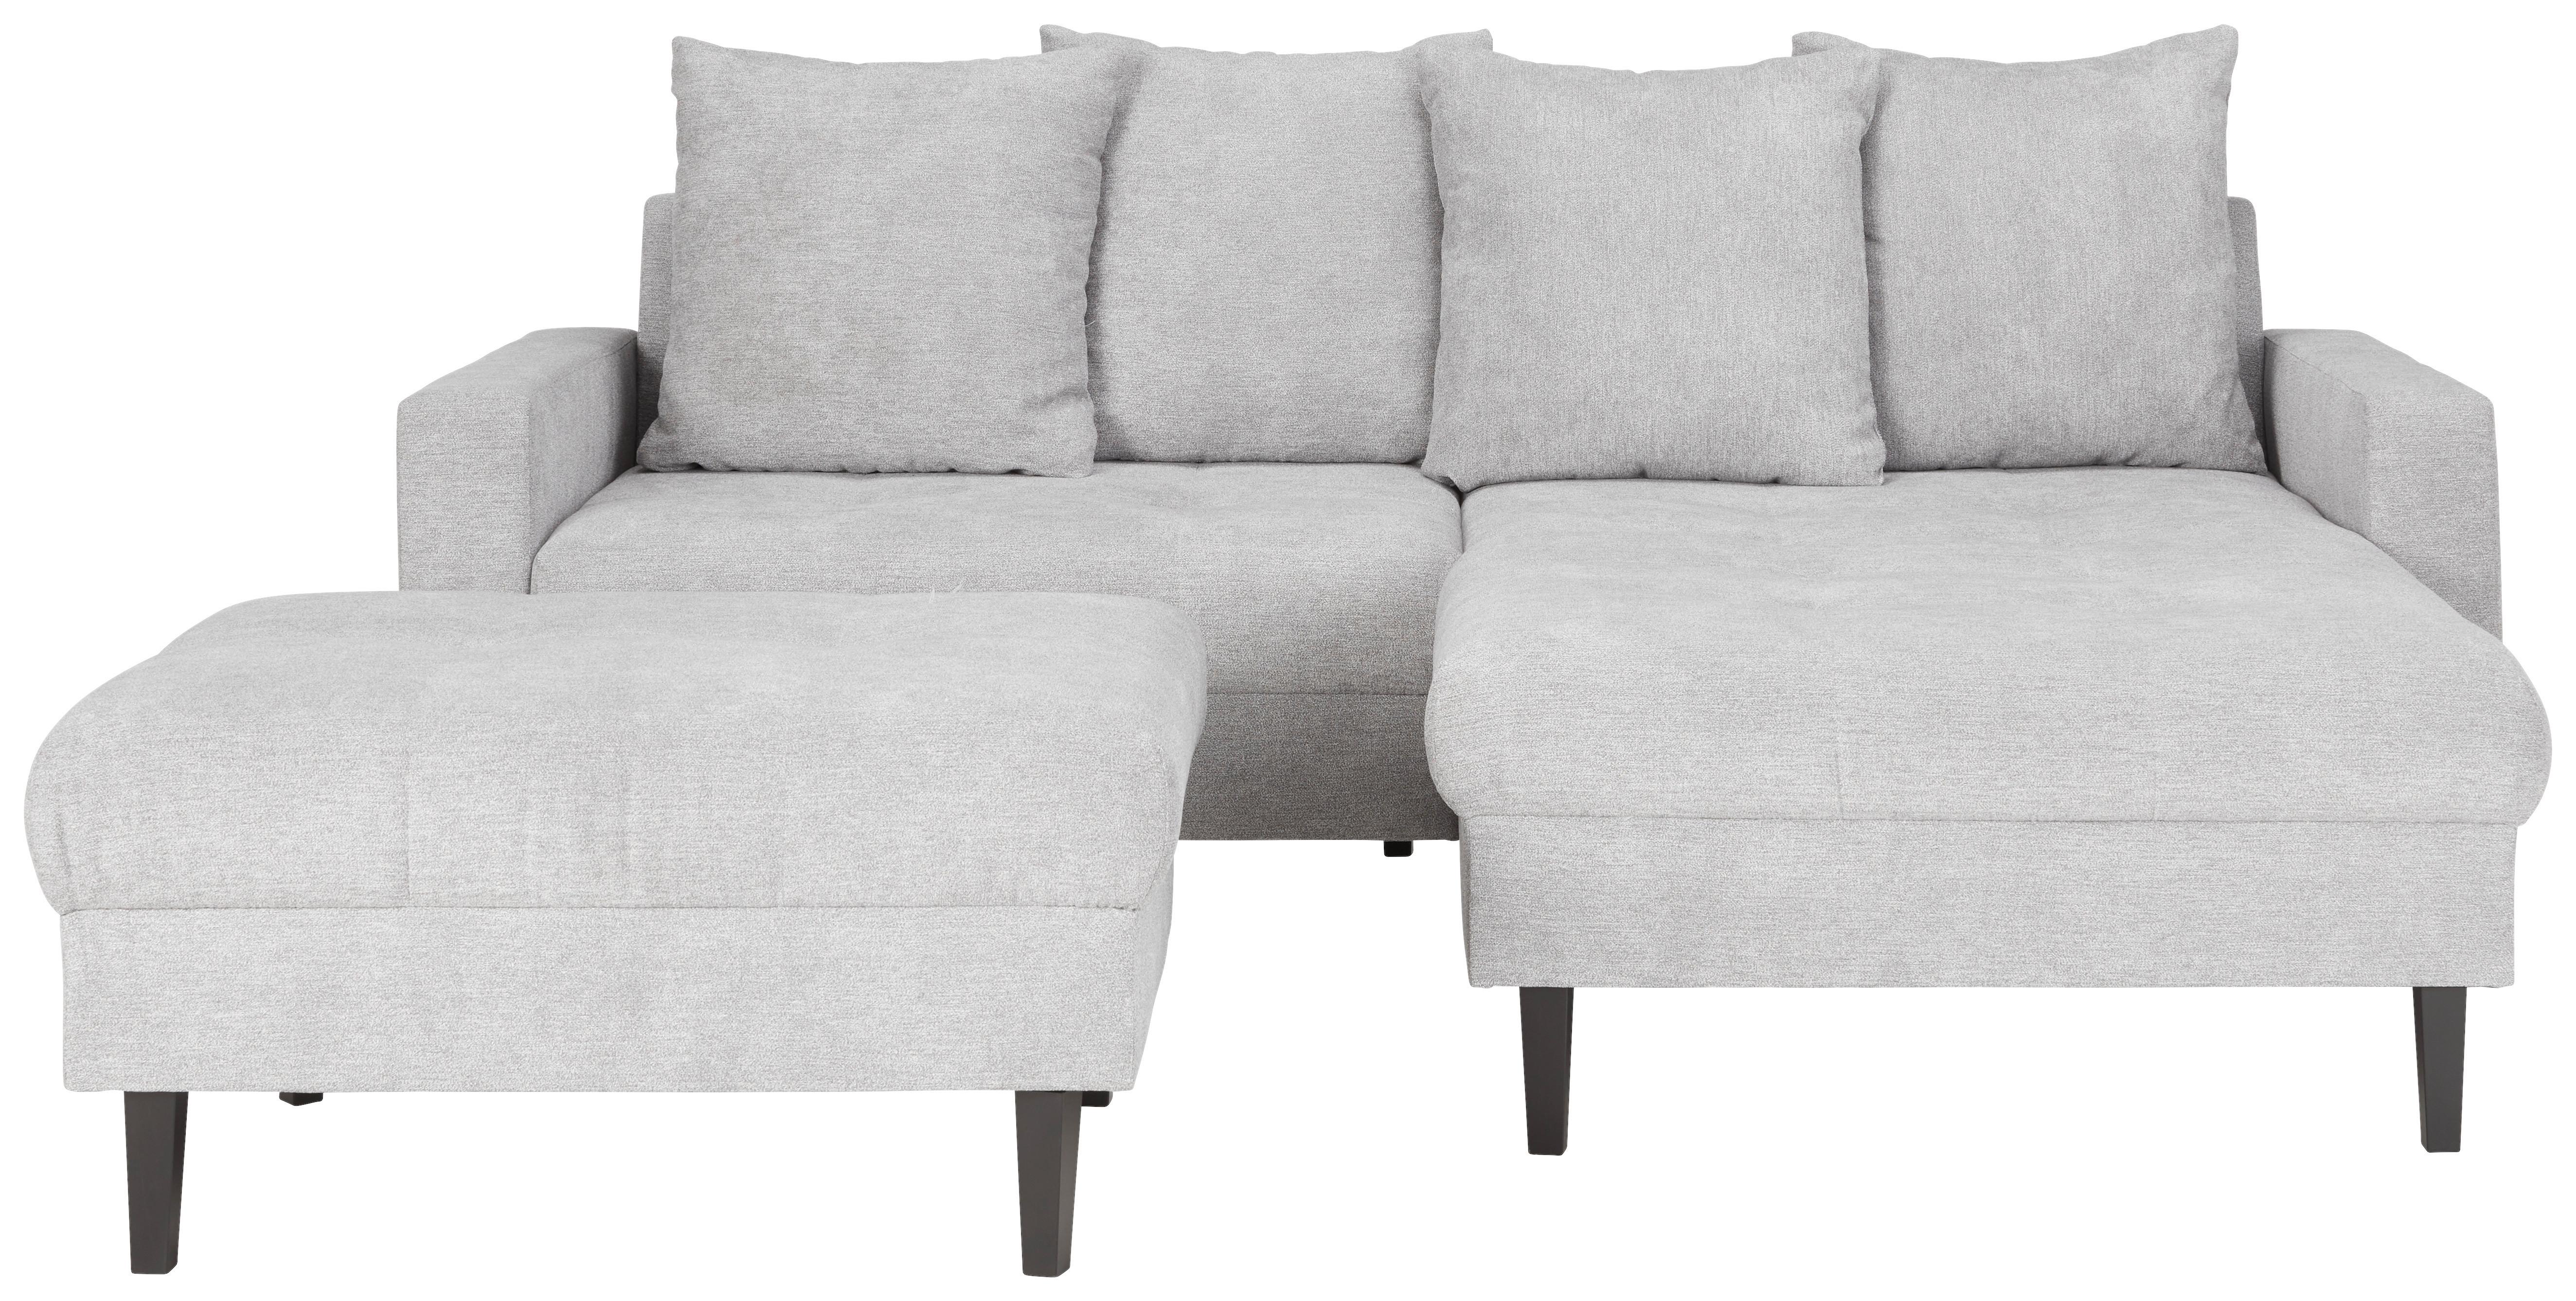 Sedežna Garnitura Boston, Oblika L - siva/črna, Konvencionalno, tekstil/les (215/92/160cm) - Top ponudba